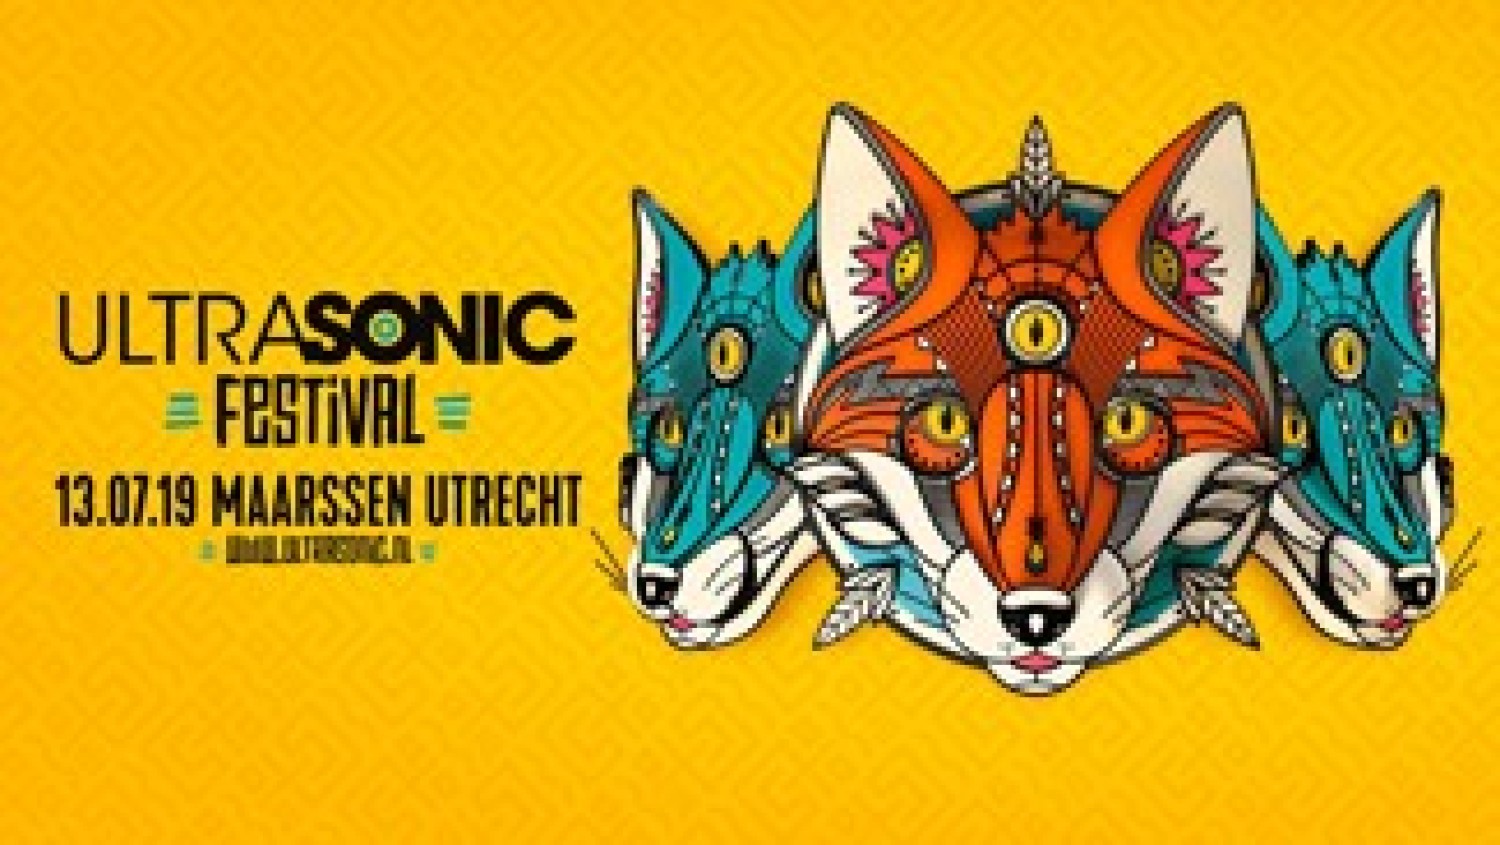 Party nieuws: Laatste kaarten Ultrasonic Festival in de verkoop!